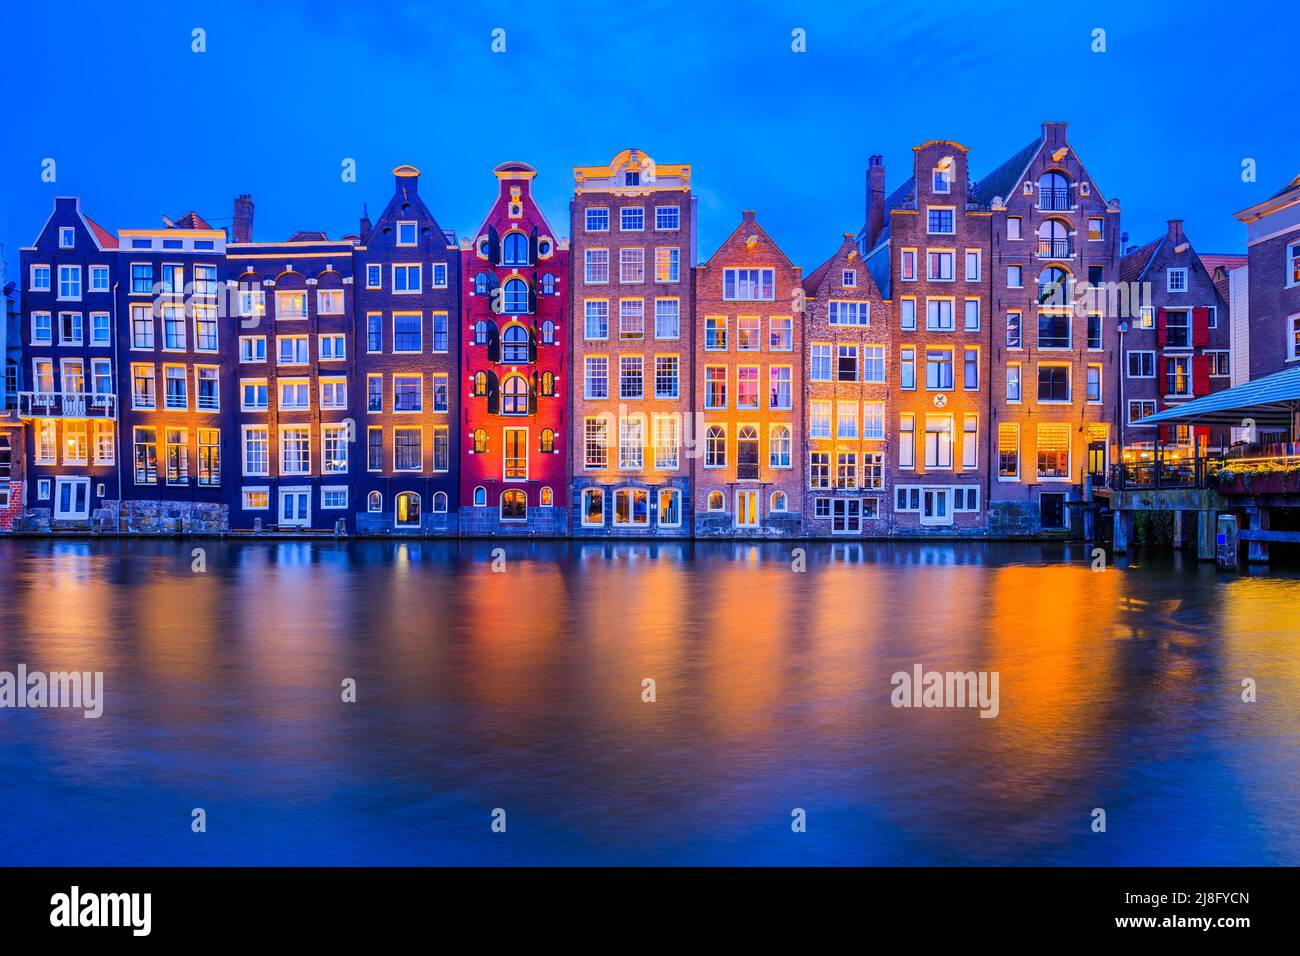 Ámsterdam, Países Bajos. Casas coloridas en el canal Damrak. Foto de stock